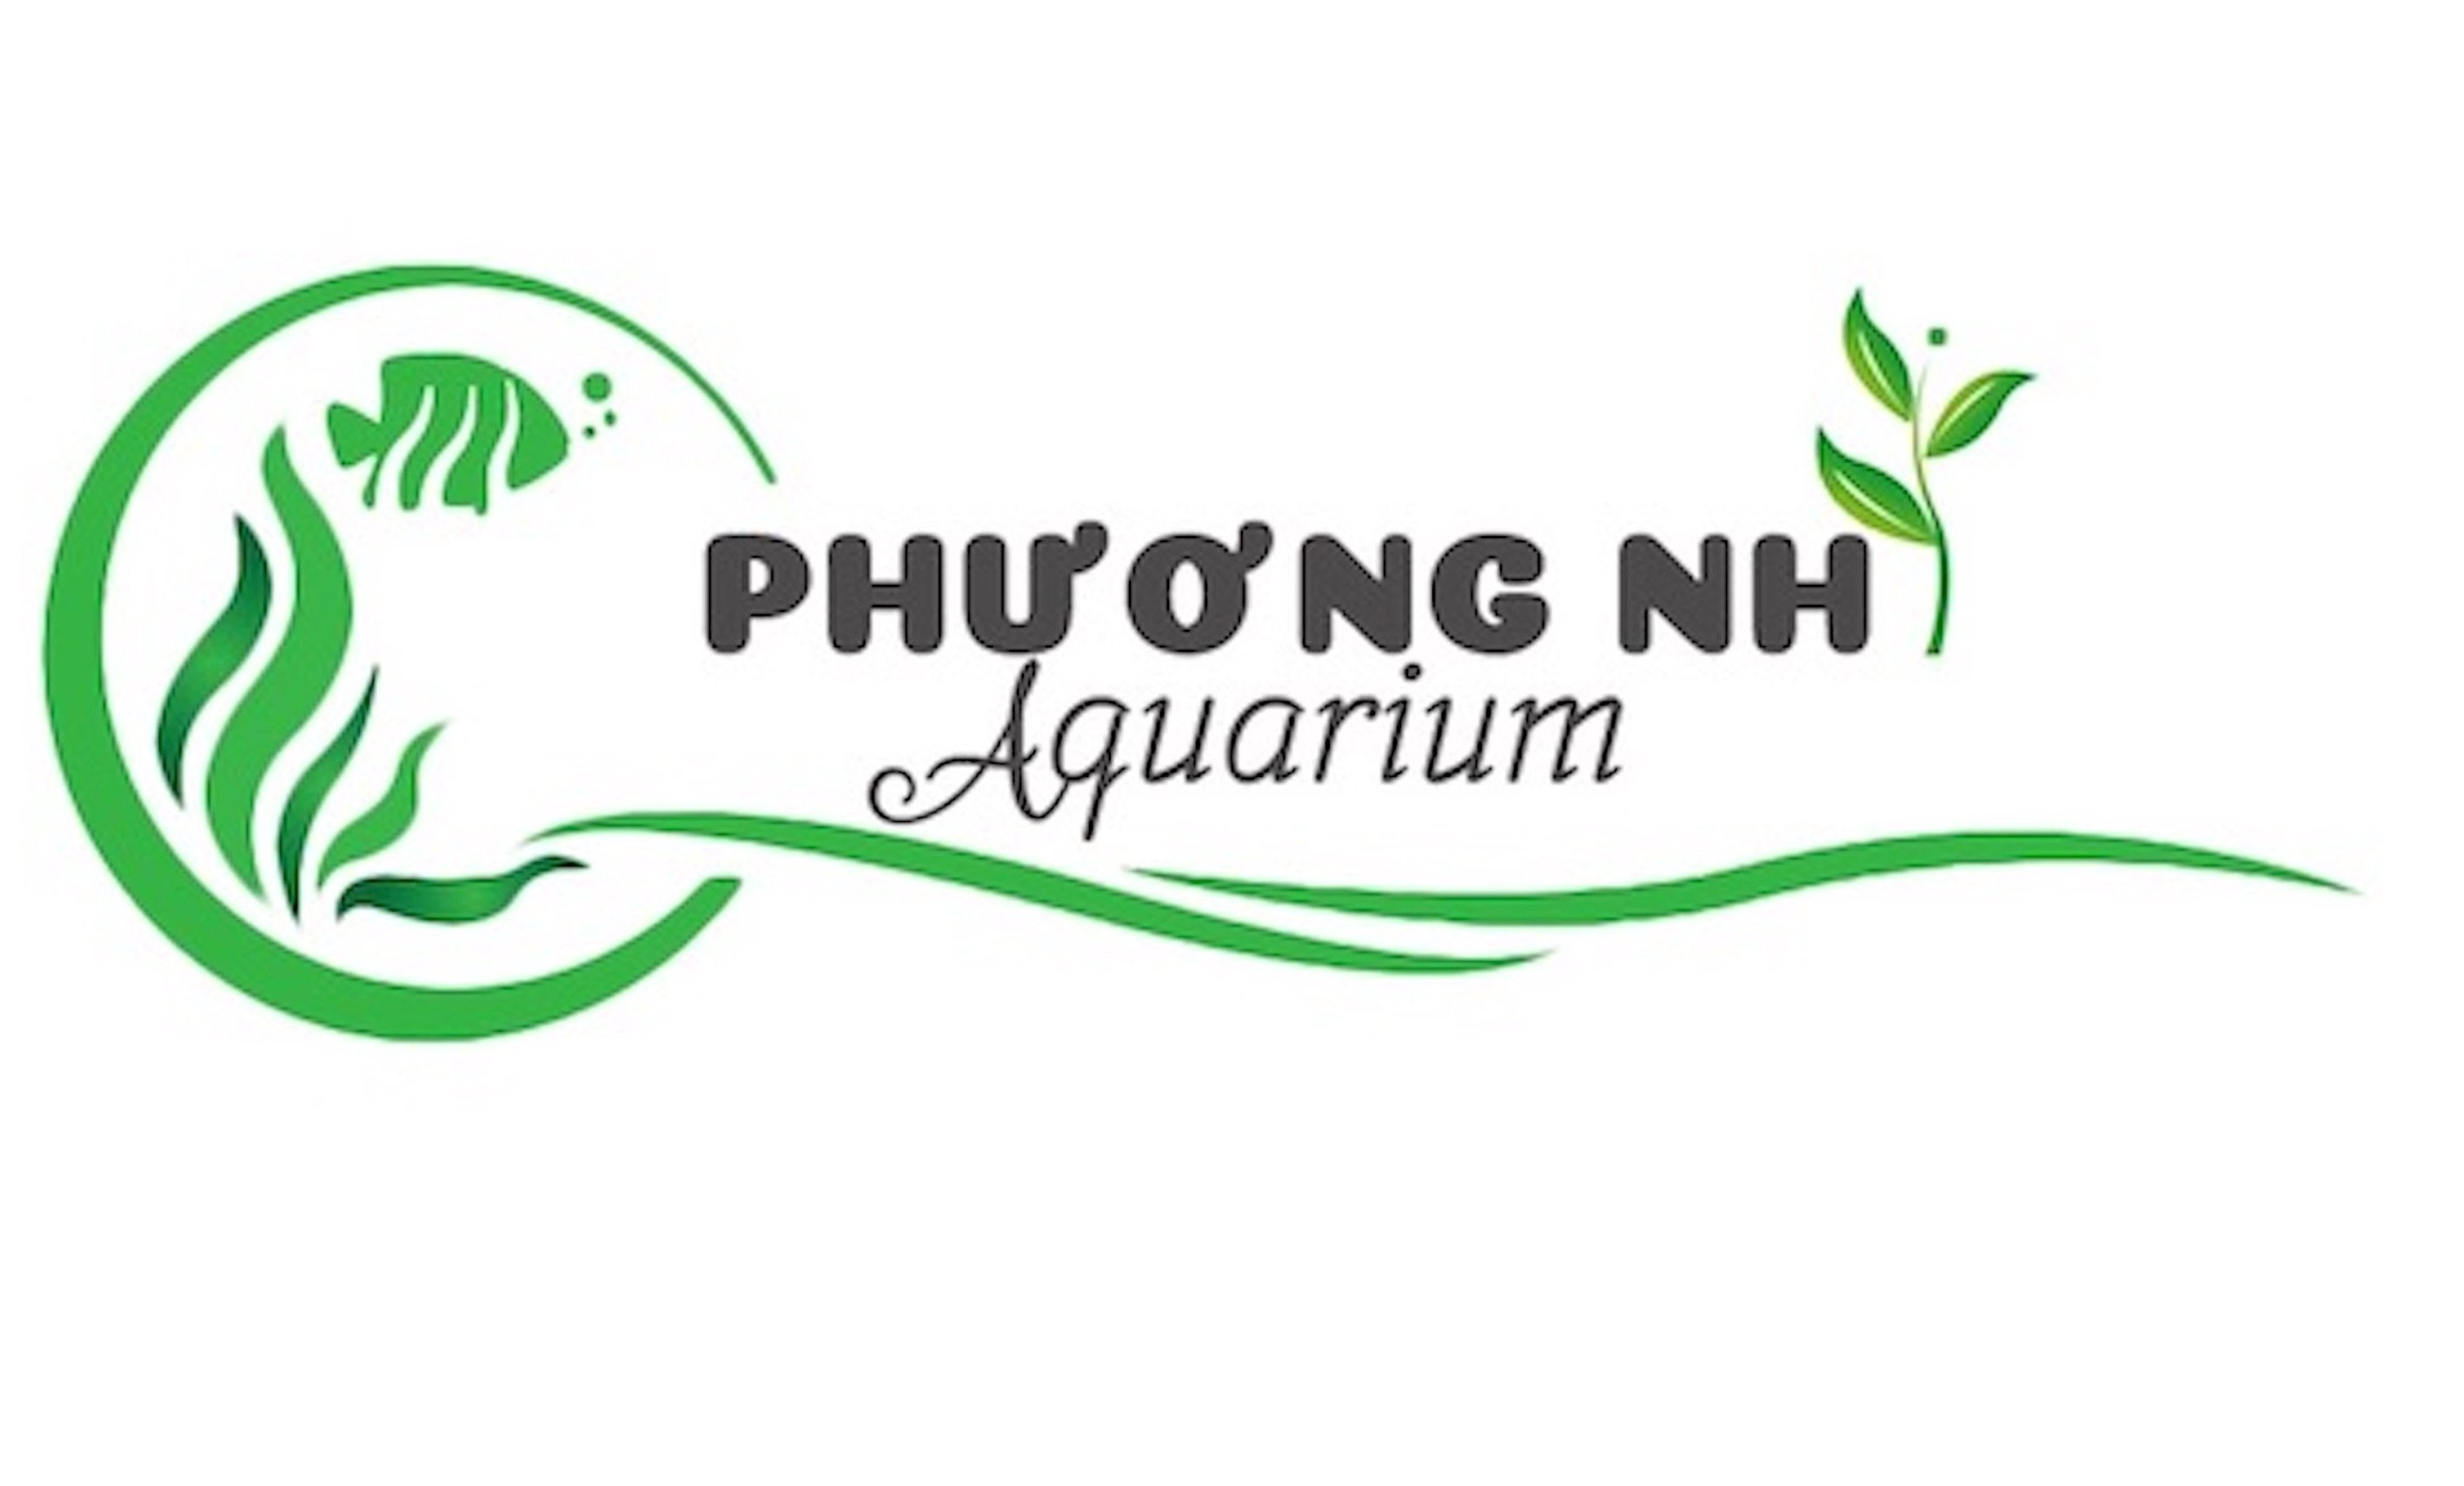 Bạch thái dương-Phương nhi aquarium